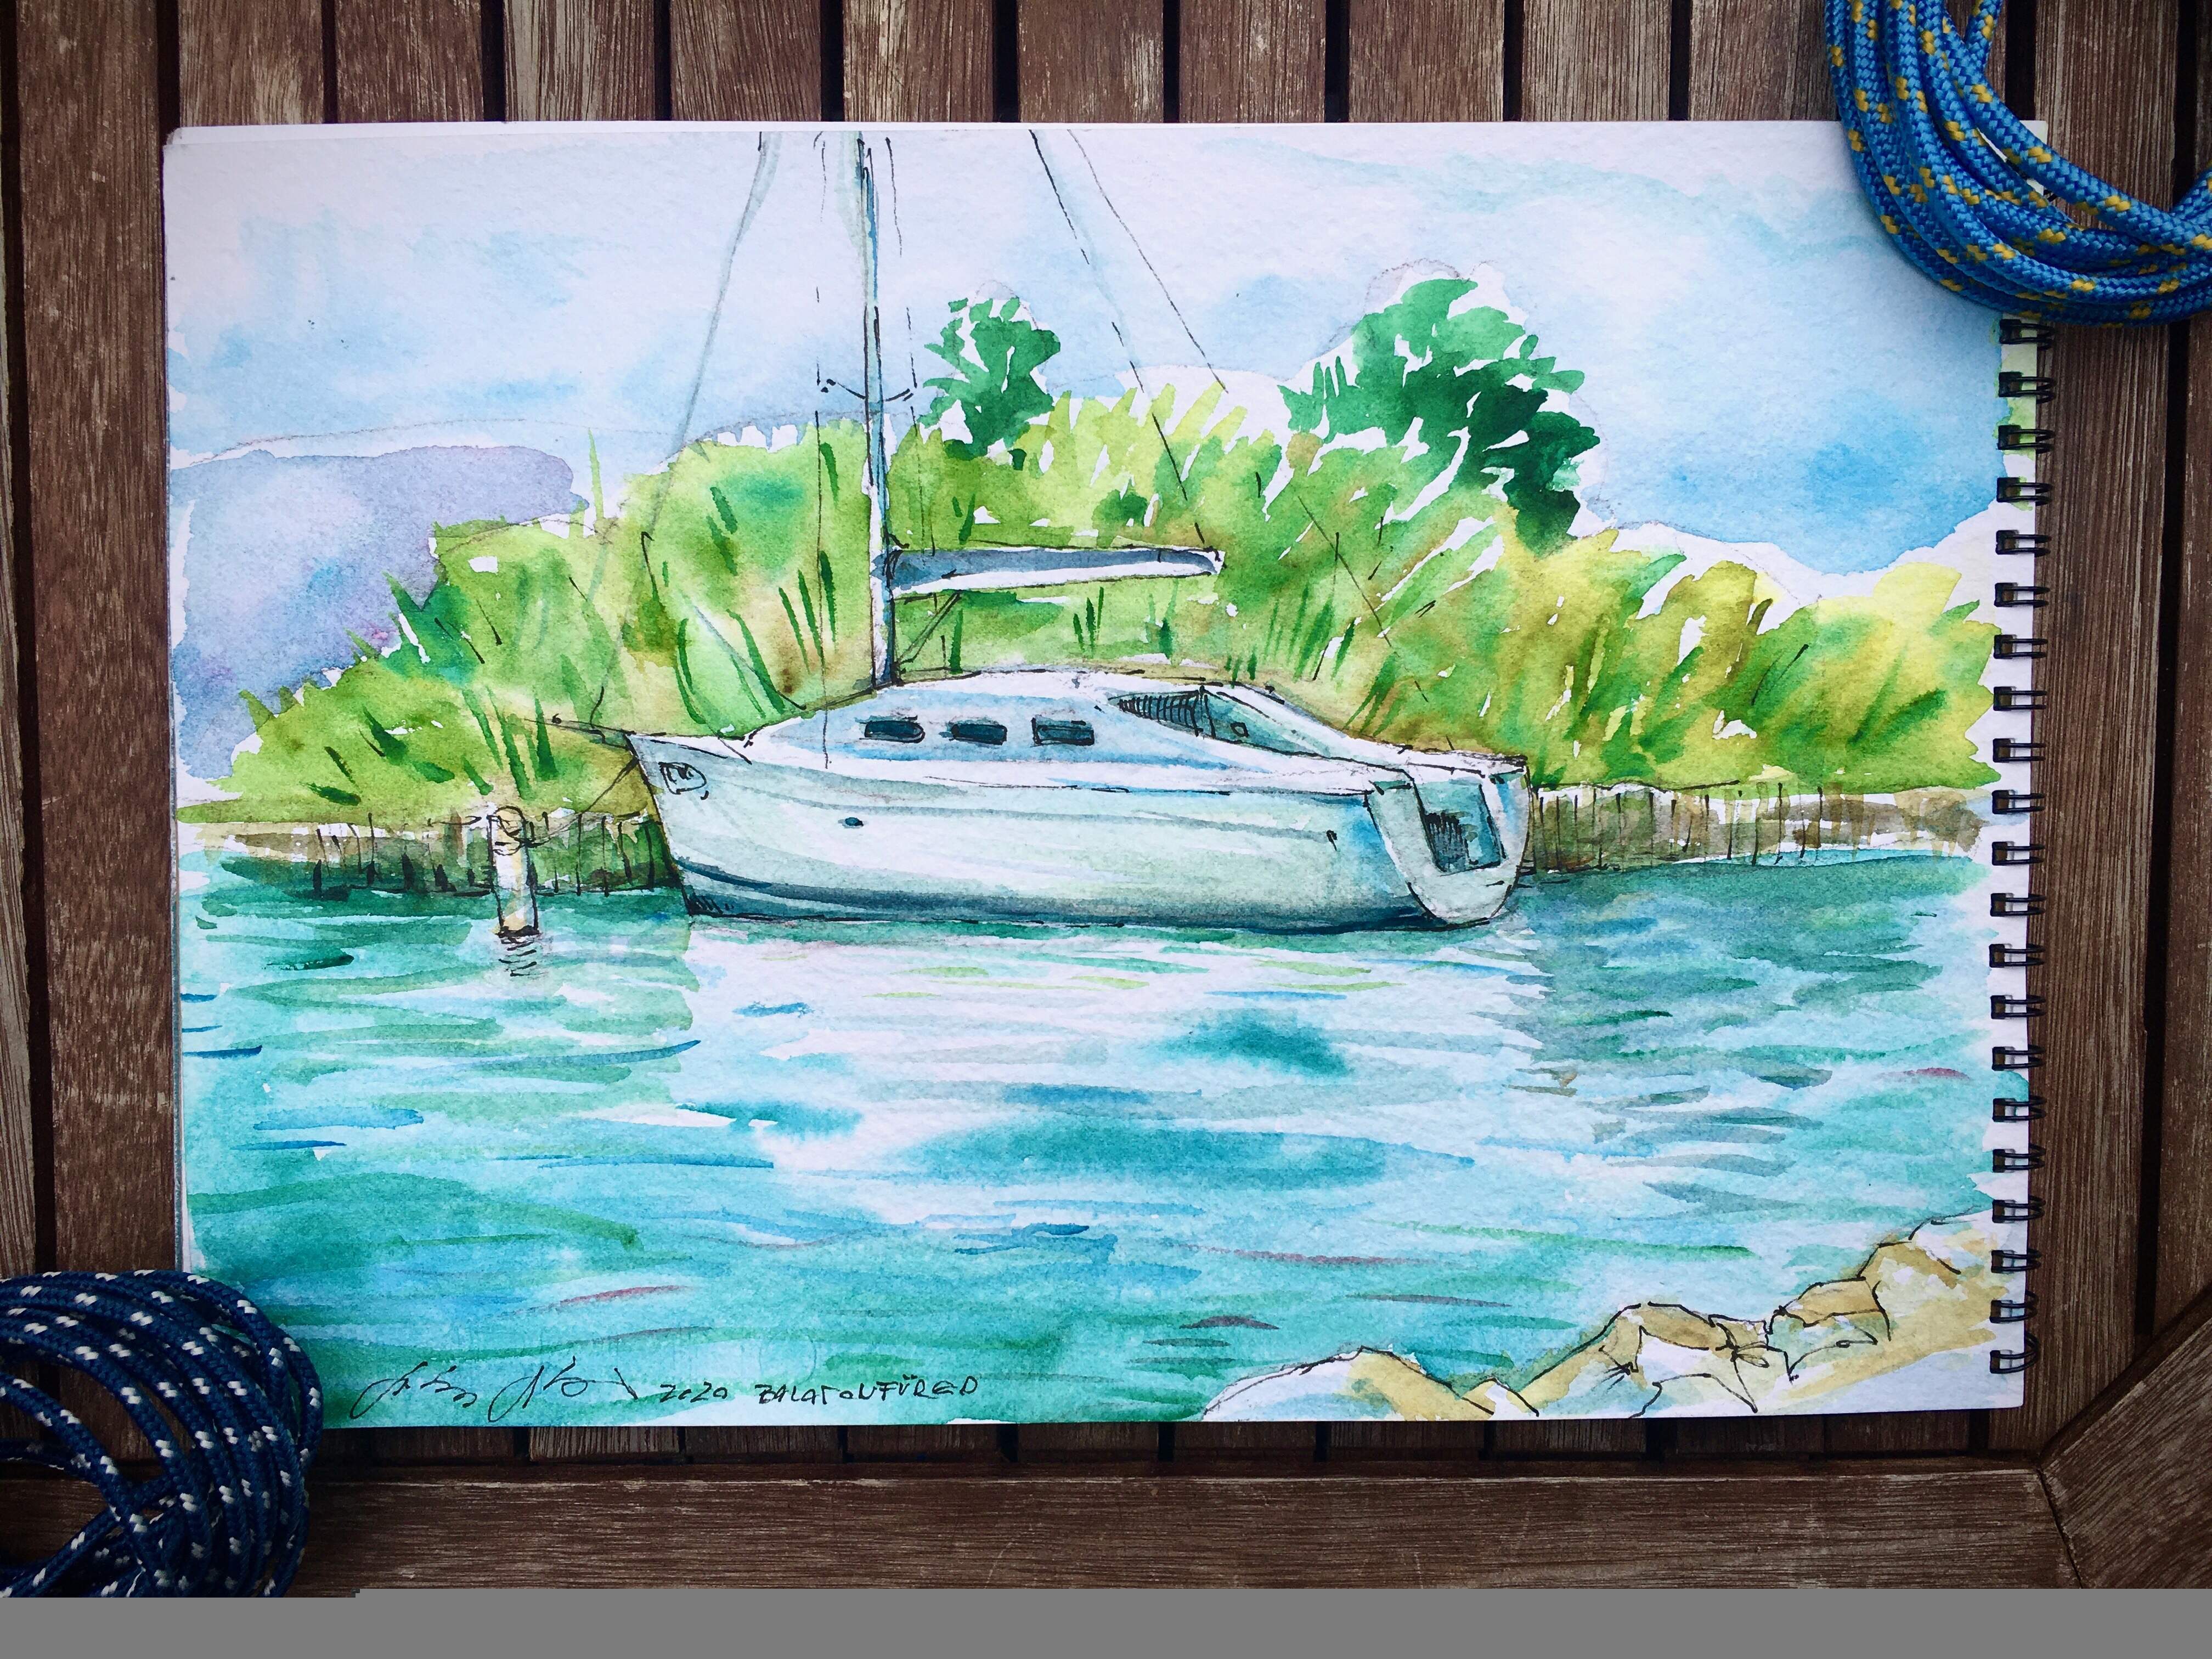 Balatoni nyár - Vitorlás hajó a kikötőban - akvarellfestményemről készült dedikált művészi nyomatok